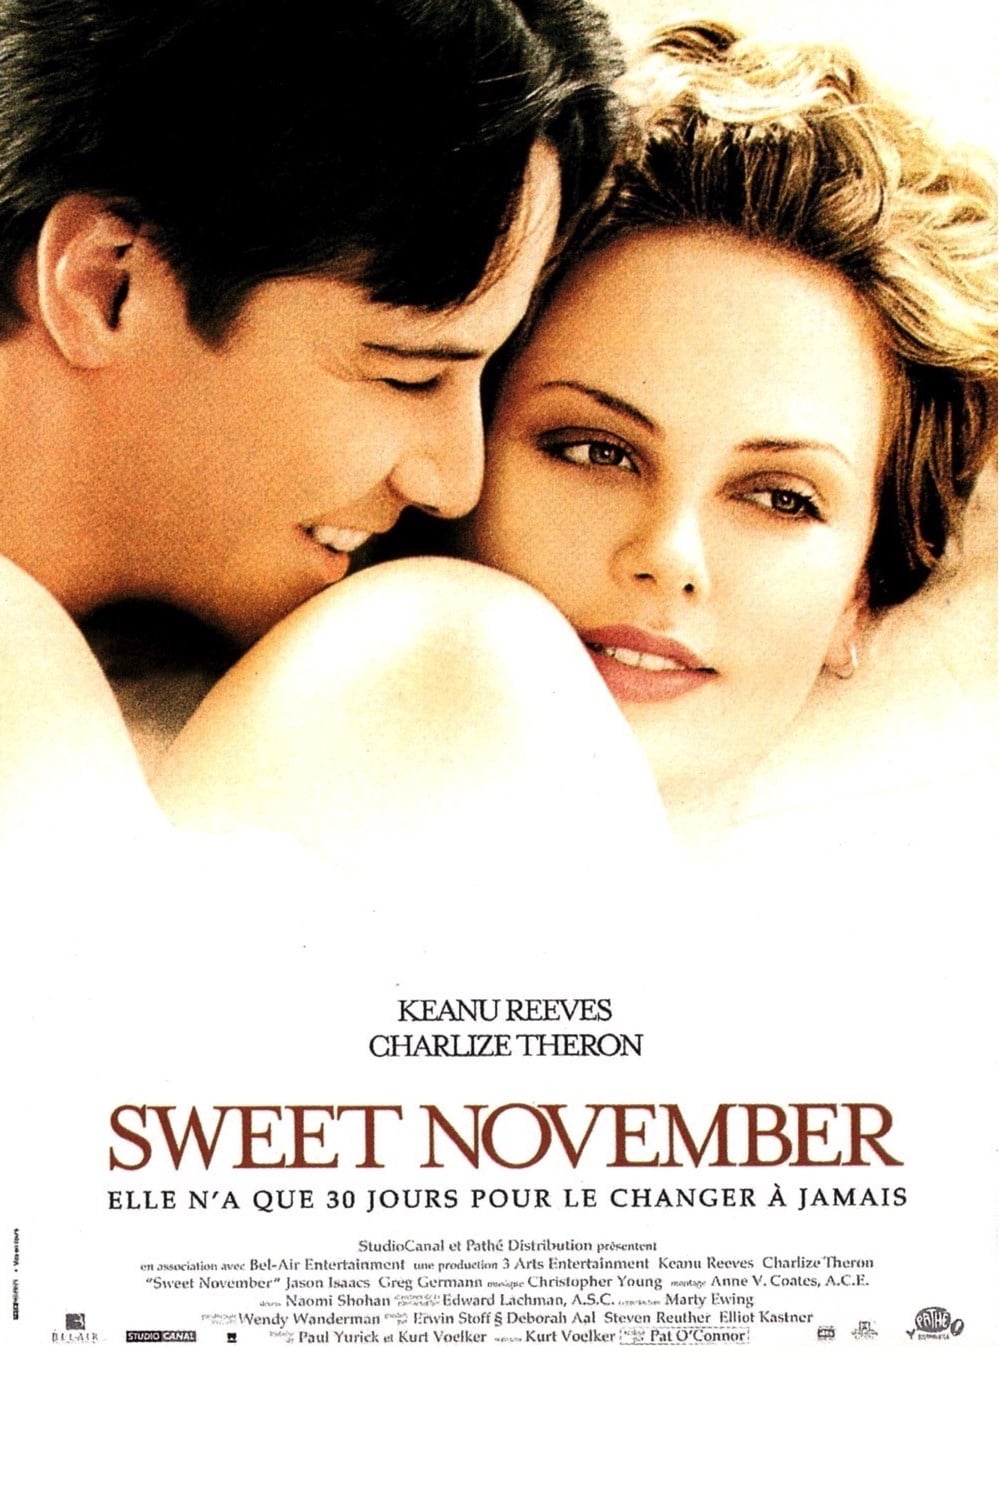 Sweet November est-il disponible sur Netflix ou autre ?